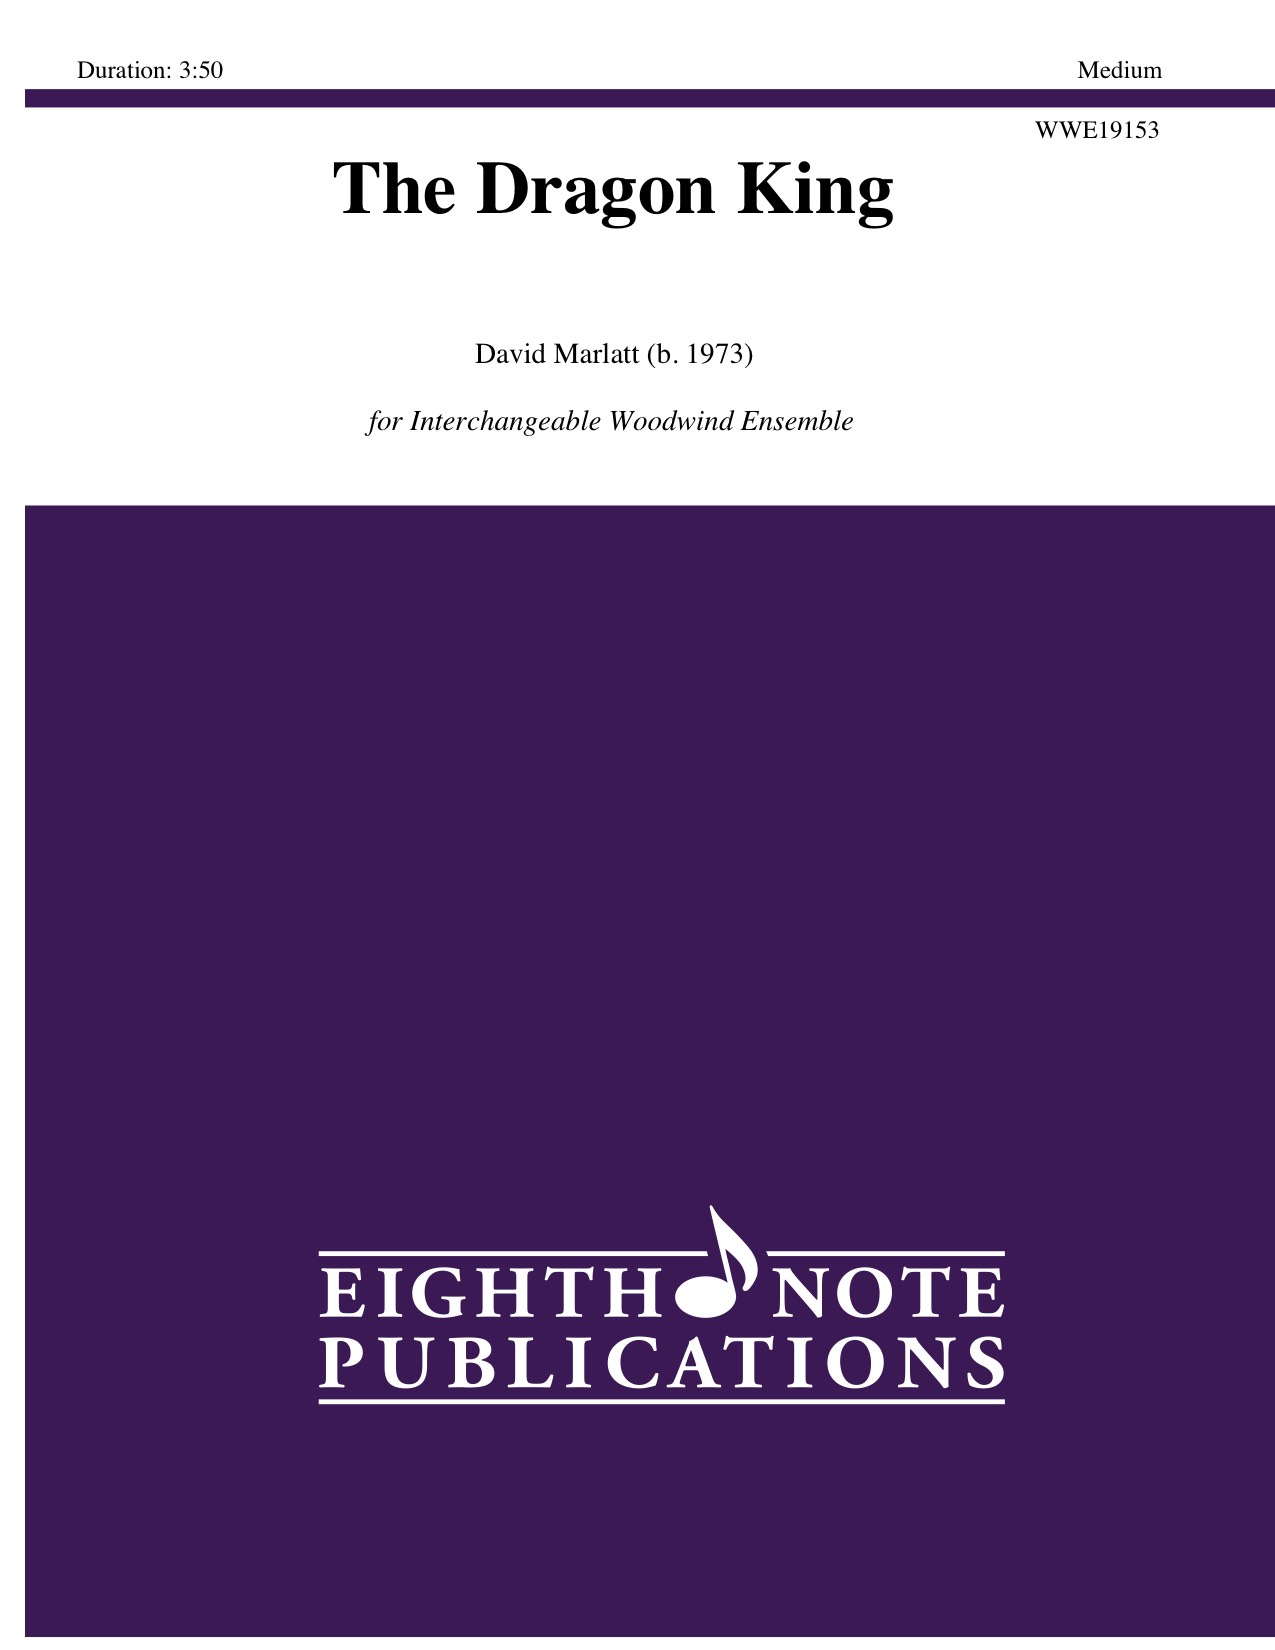 Dragon King, The - David Marlatt